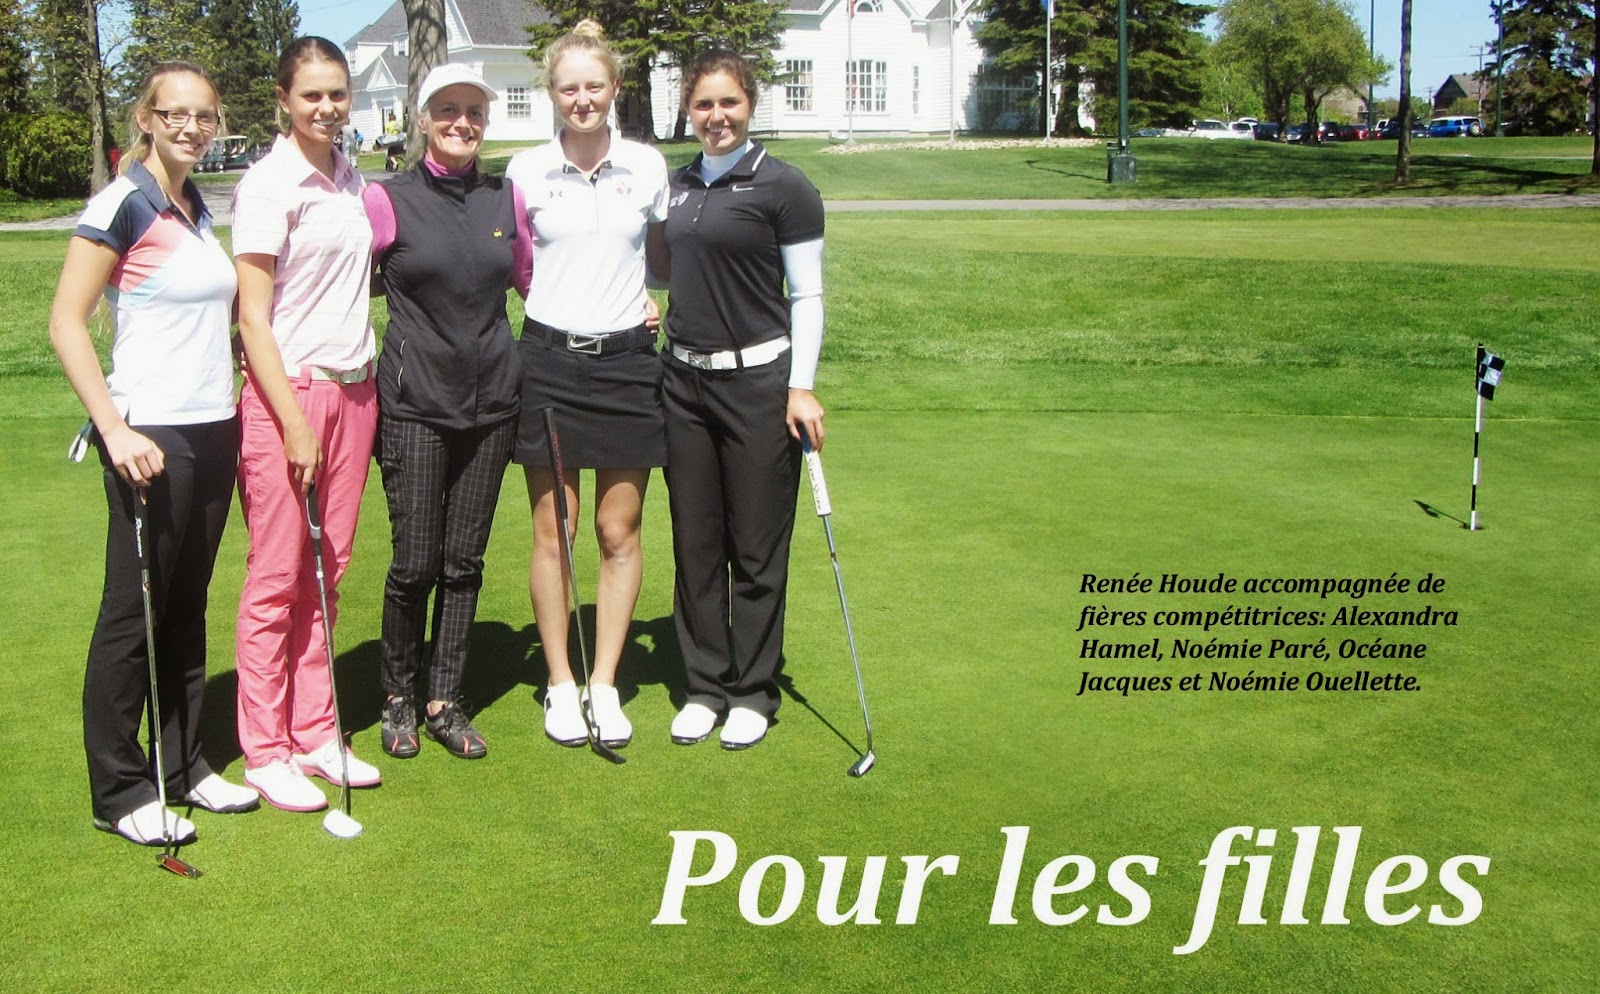 Renée Houde, le golf pour les filles